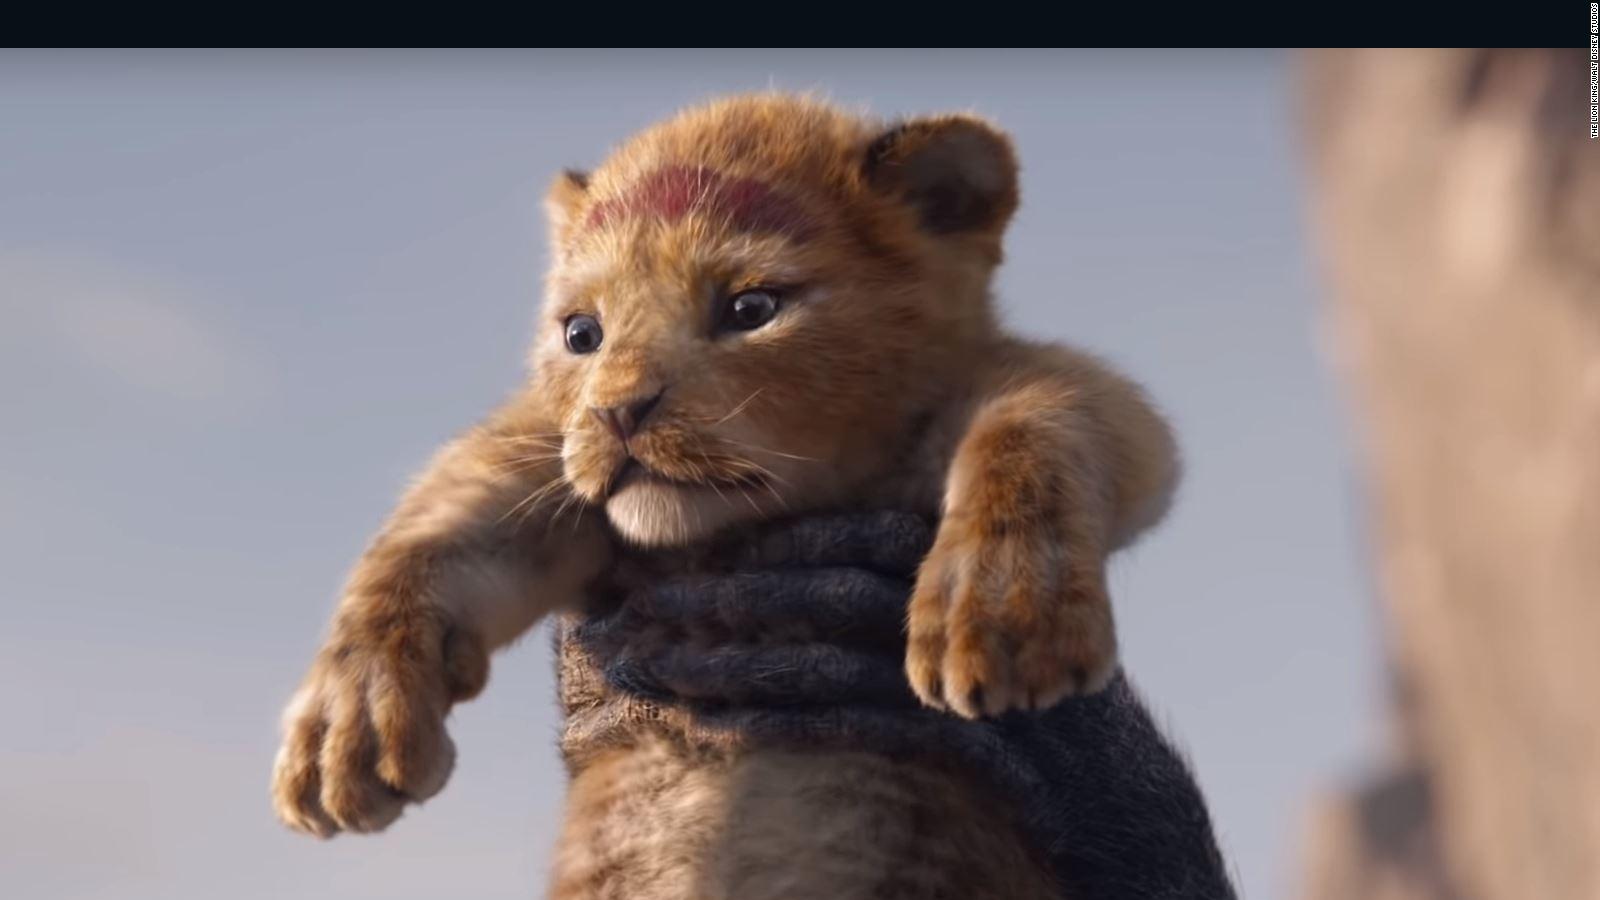 Disney estrena el primer trailer de 'El Rey León